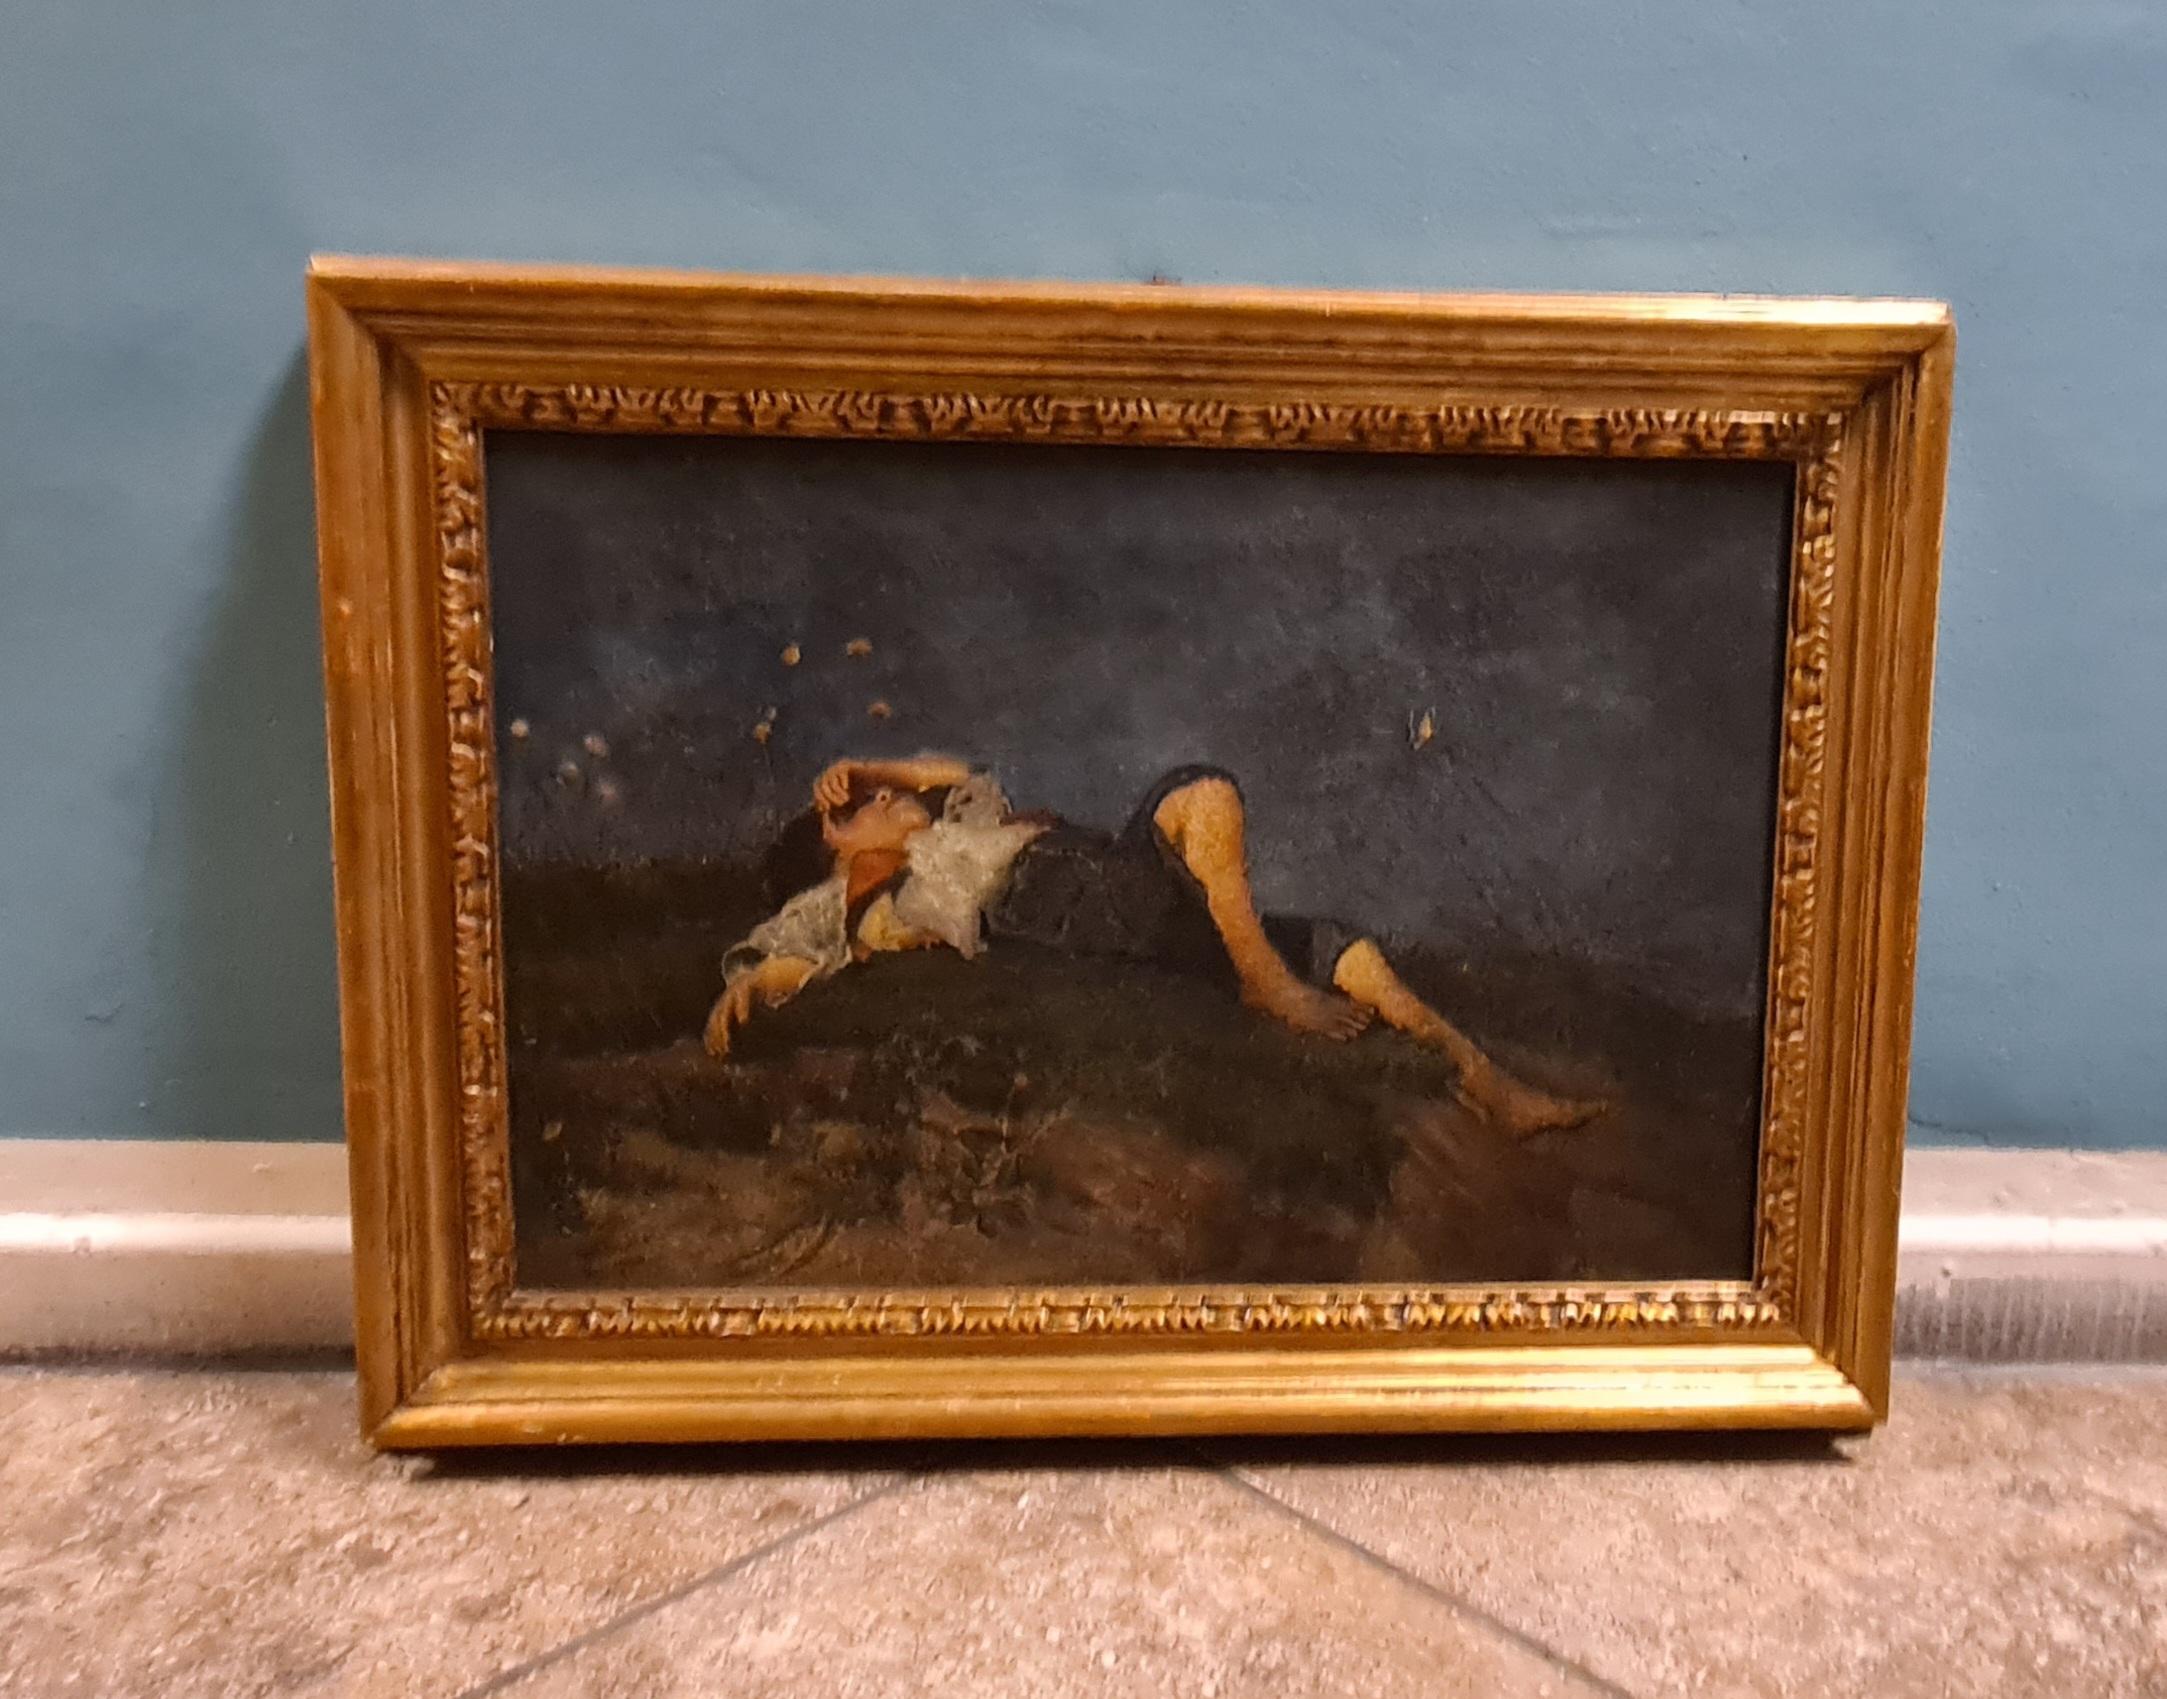 Peinture d'un berger au repos.

Peint à l'huile sur toile, le tableau représente un jeune berger se reposant dans l'herbe par un après-midi d'été.

Le jeune berger est entouré de papillons enjoués.

Réalisée avec une grande technique, cette peinture